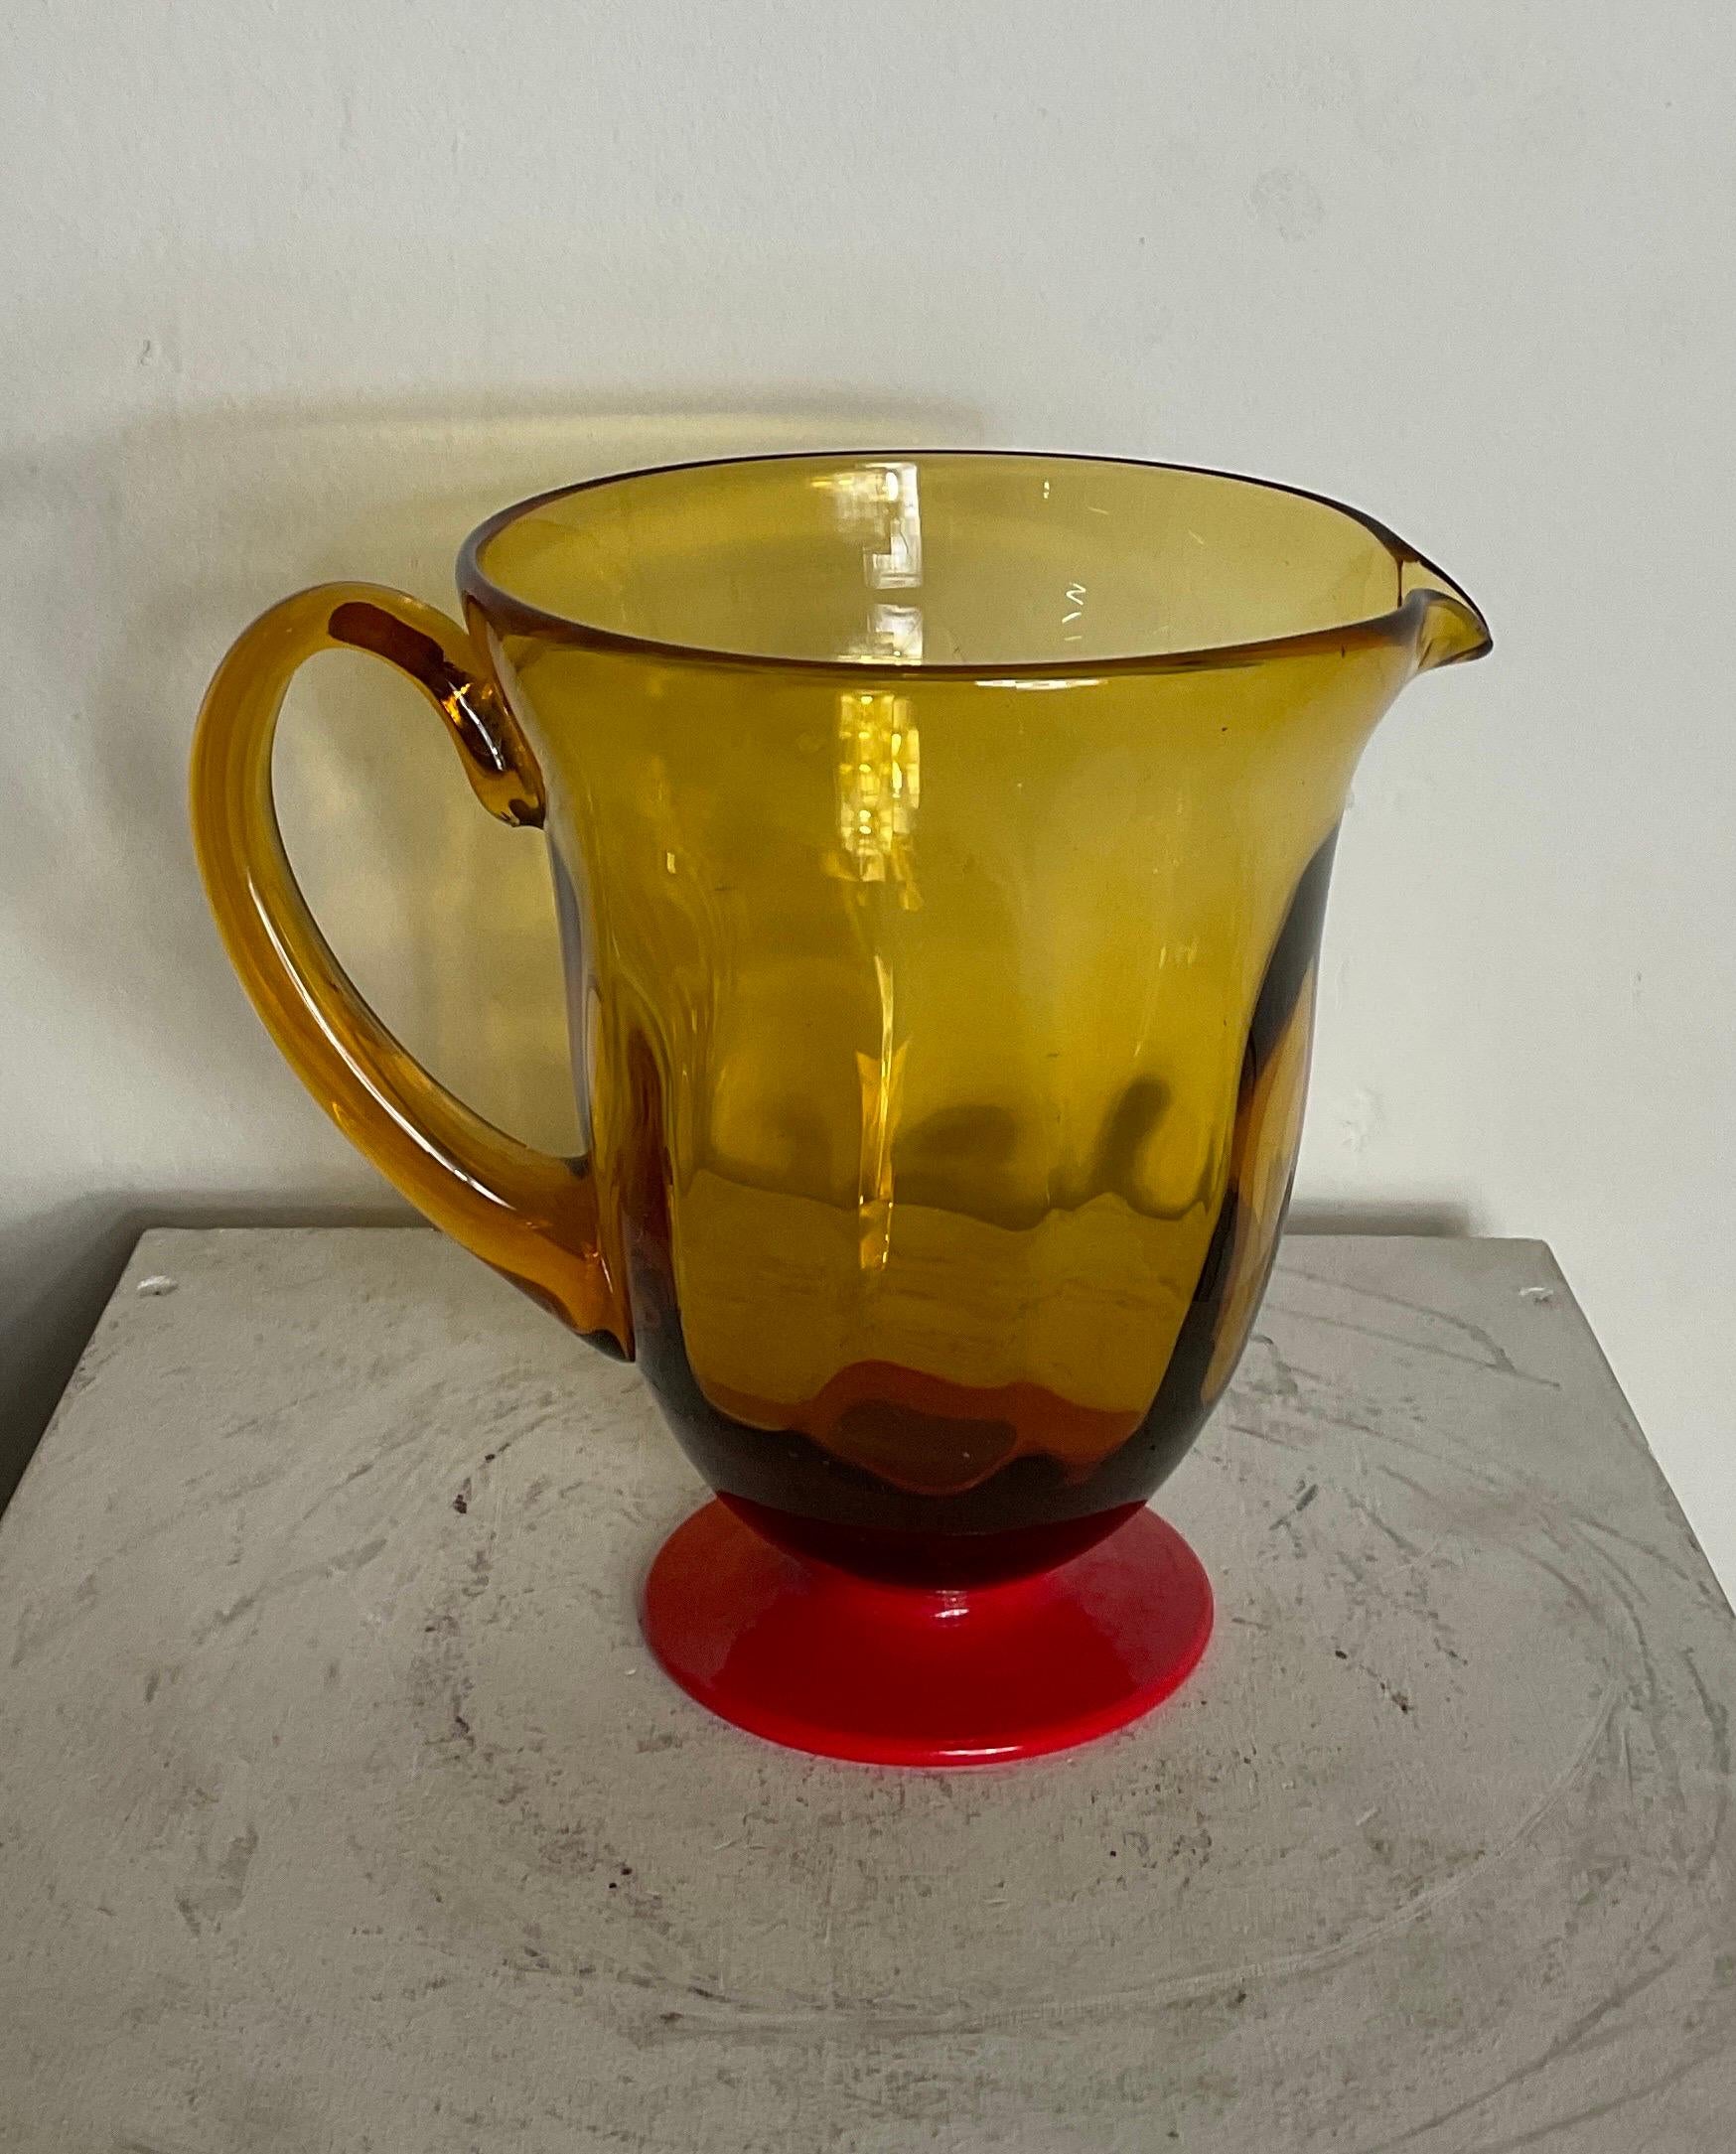 Krug aus Murano-Glas, orangefarben, von Vittorio Zecchin, 1930. In gutem Zustand mit gebrauchsbedingten Abnutzungserscheinungen und Jahren. In den dreißiger Jahren und in seinem letzten Lebensjahrzehnt widmete er sich auch der Lehre und arbeitete